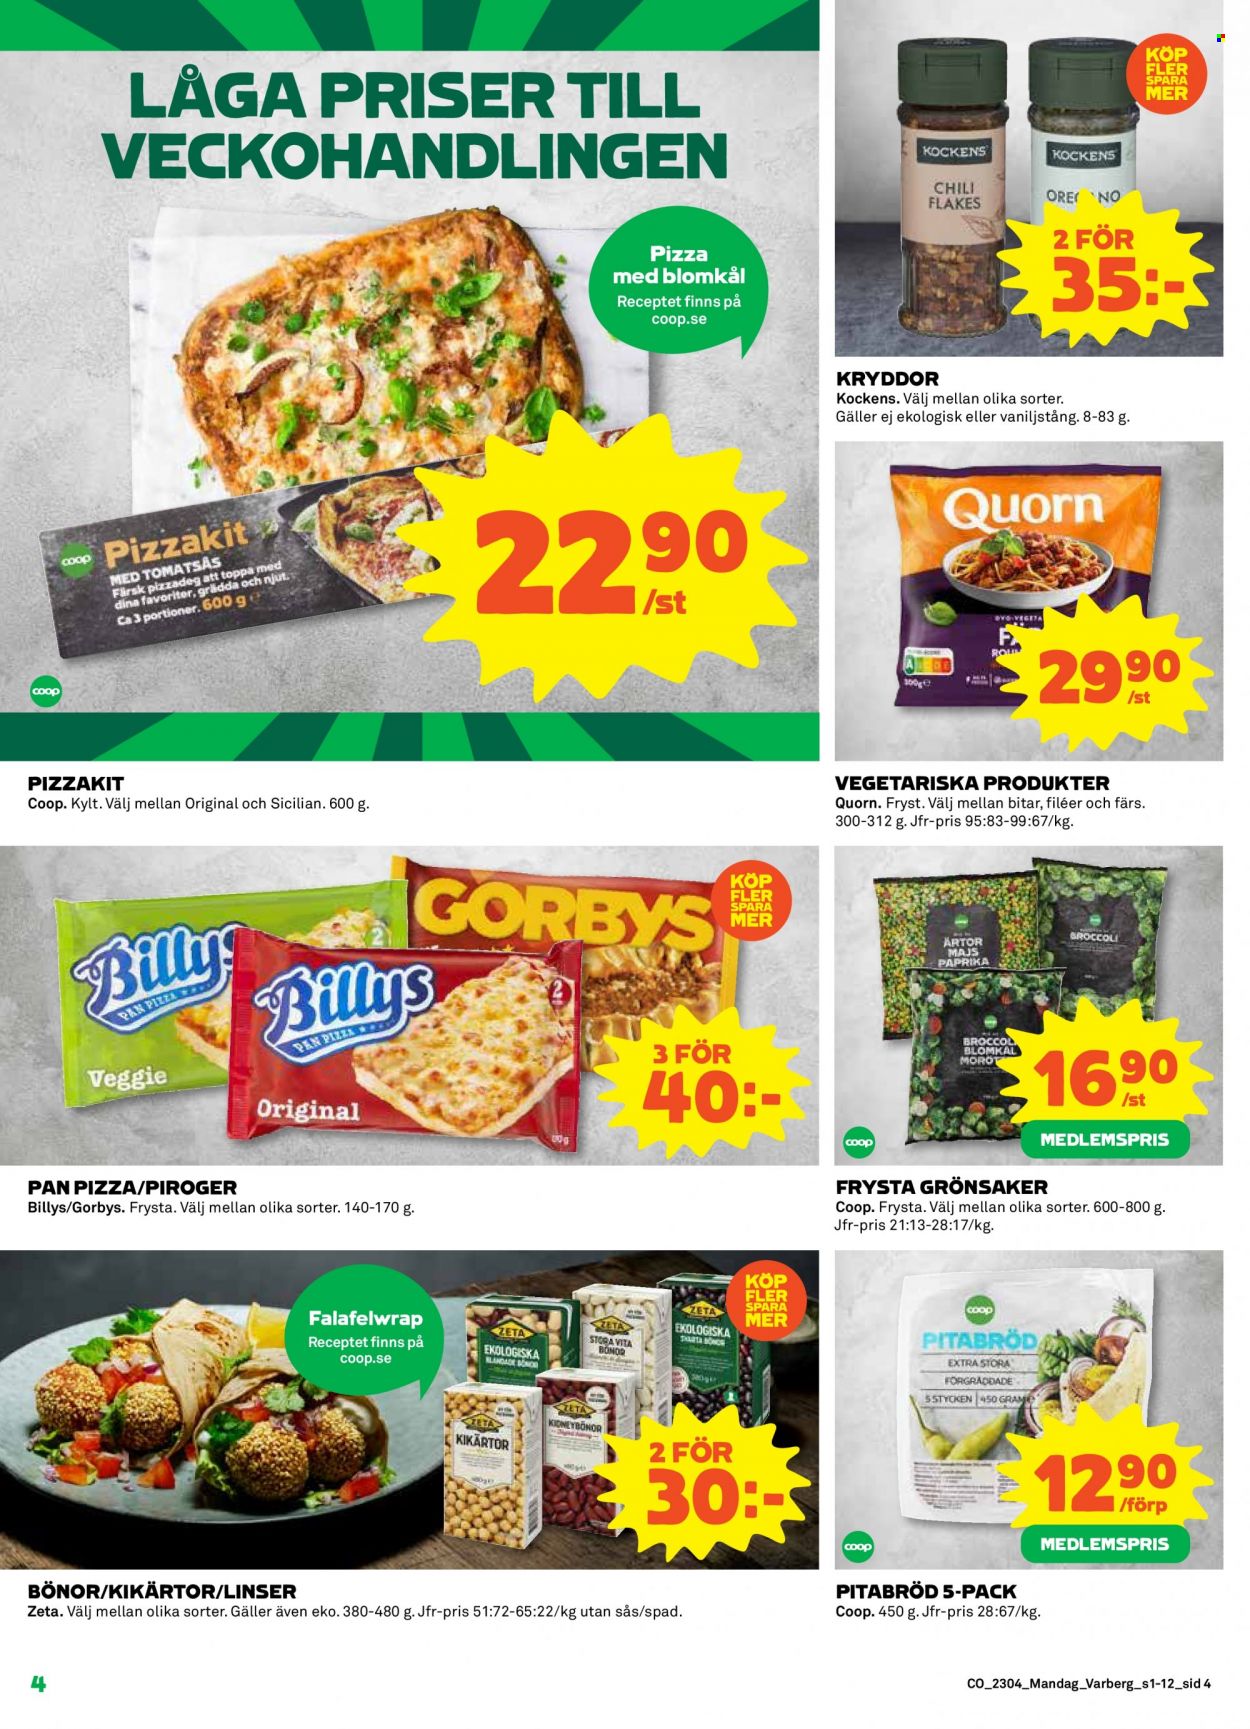 thumbnail - Coop reklamblad - 23/1 2023 - 29/1 2023 - varor från reklamblad - pitabröd, paprika, blomkål, broccoli, morötter, majs, Quorn, piroger, pizzadeg, pizzakit, Pan Pizza, Kockens, kidneybönor, kryddor. Sida 4.